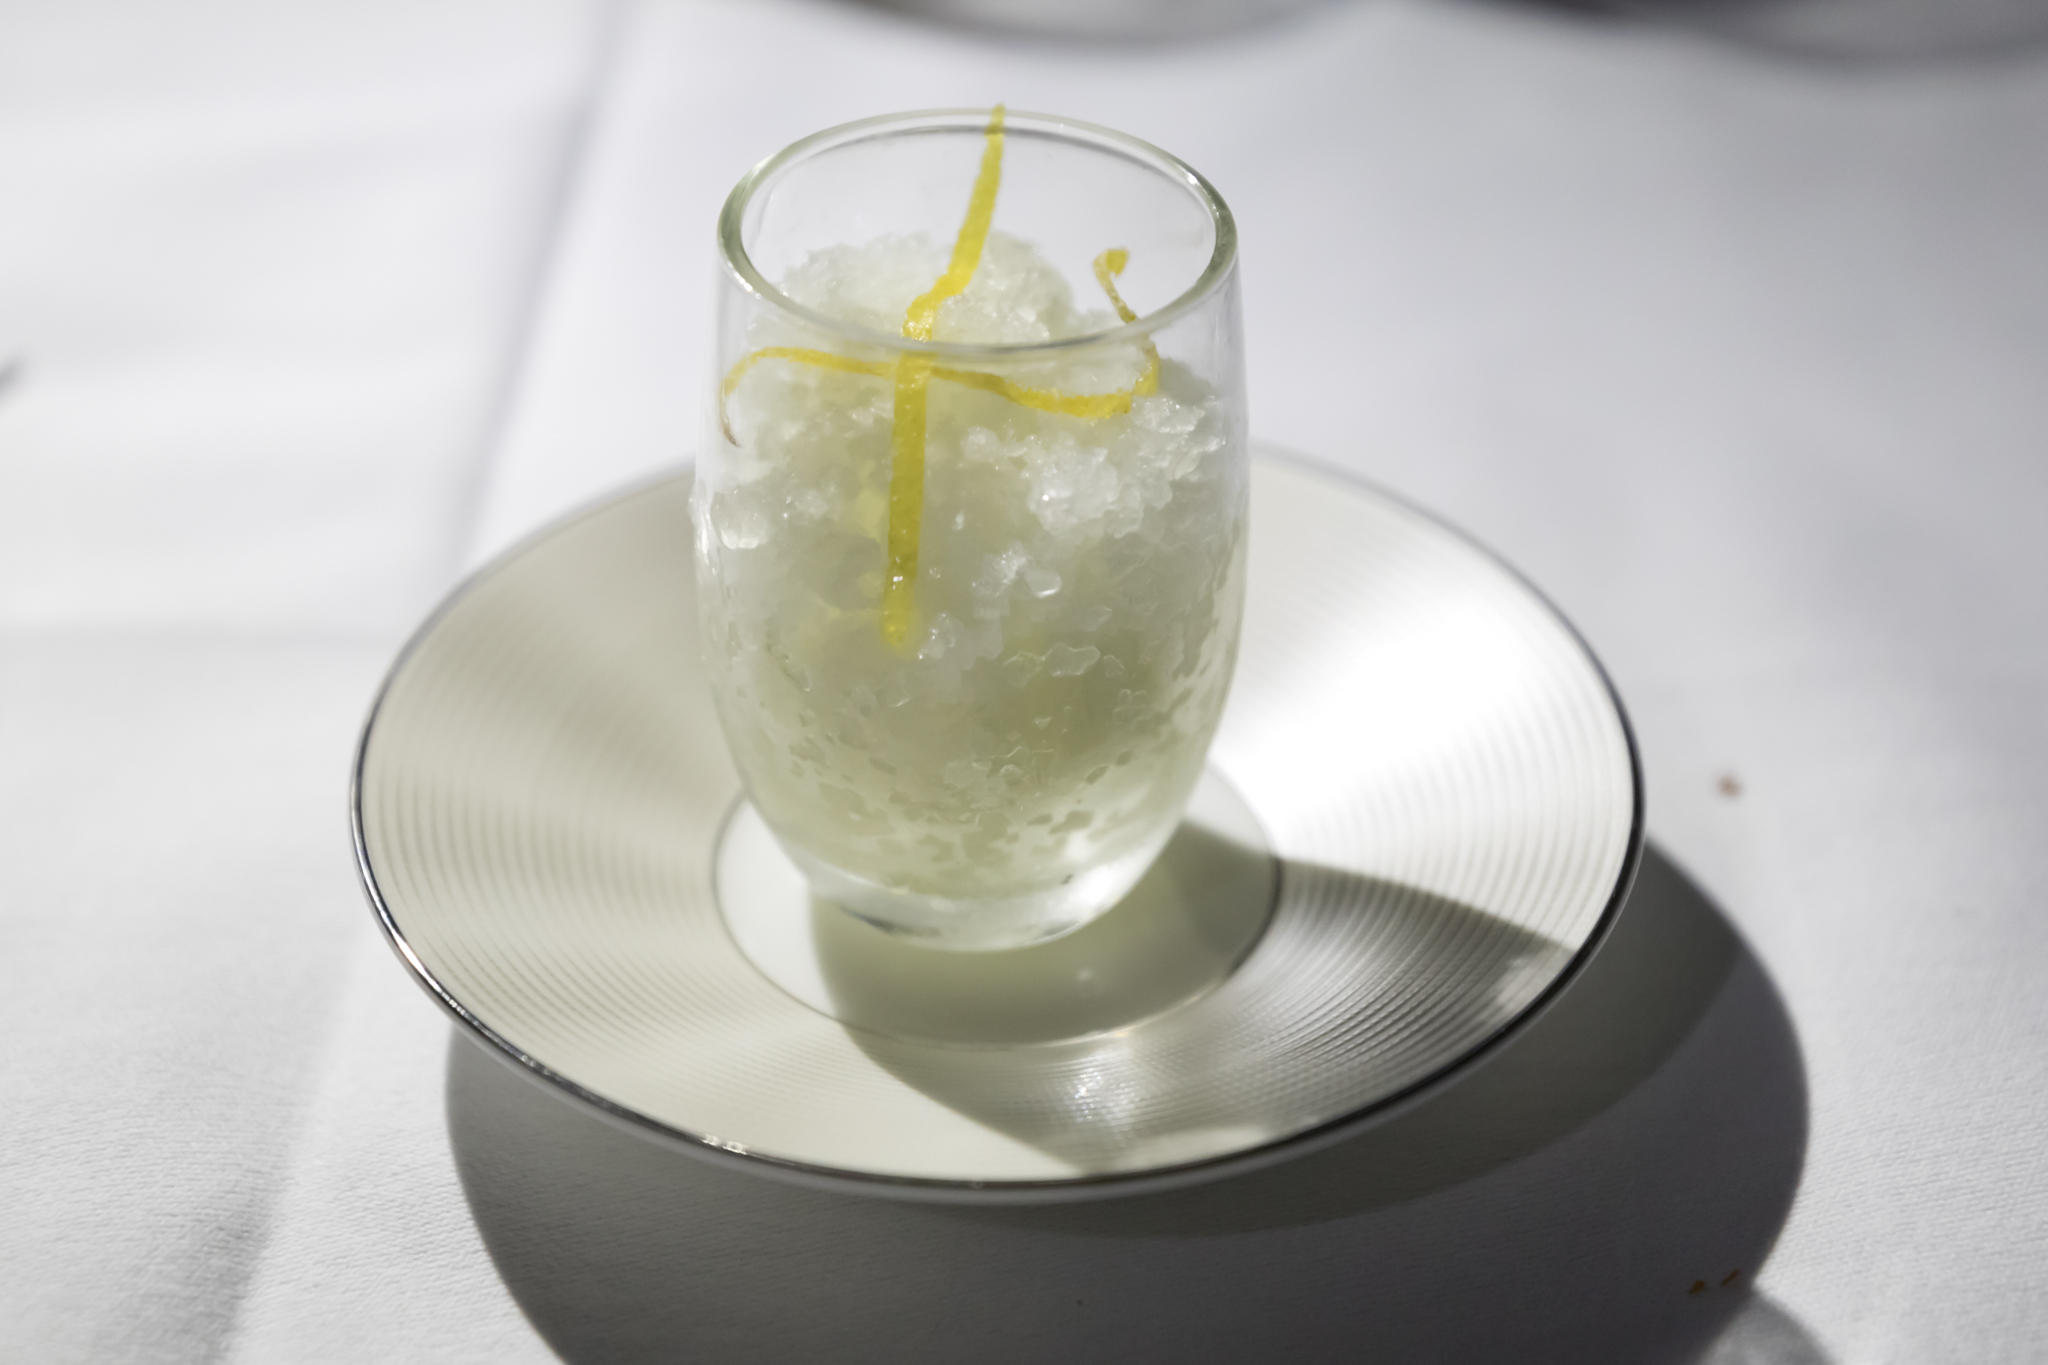 a glass with a lemon peel on a plate